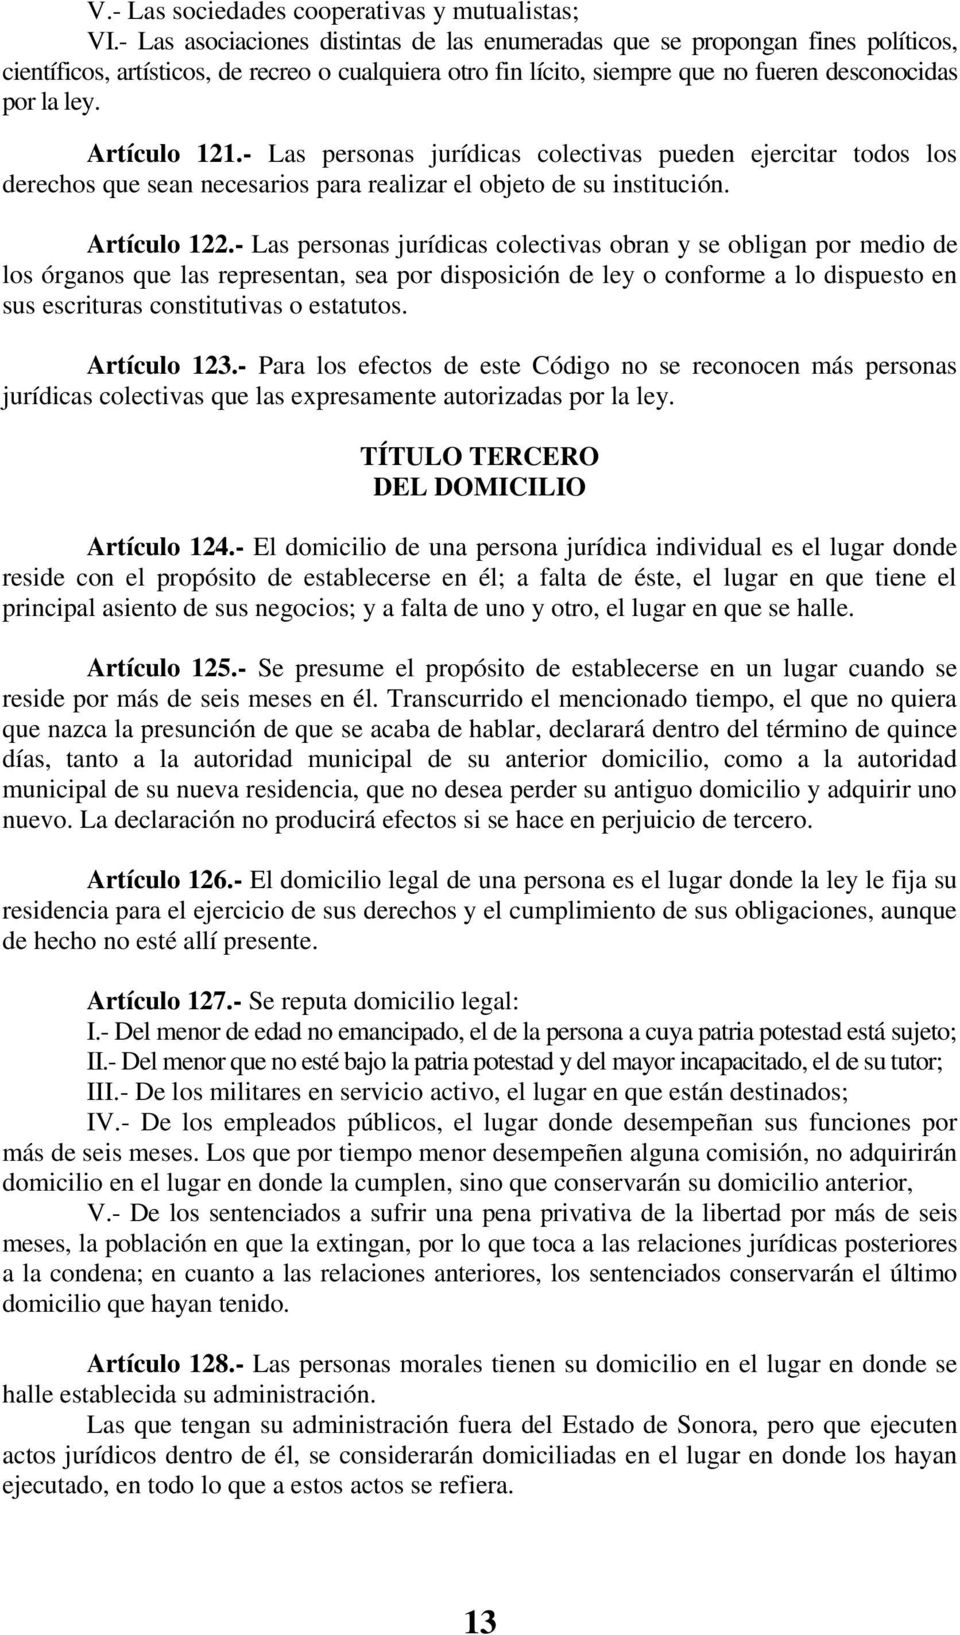 Artículo 121.- Las personas jurídicas colectivas pueden ejercitar todos los derechos que sean necesarios para realizar el objeto de su institución. Artículo 122.